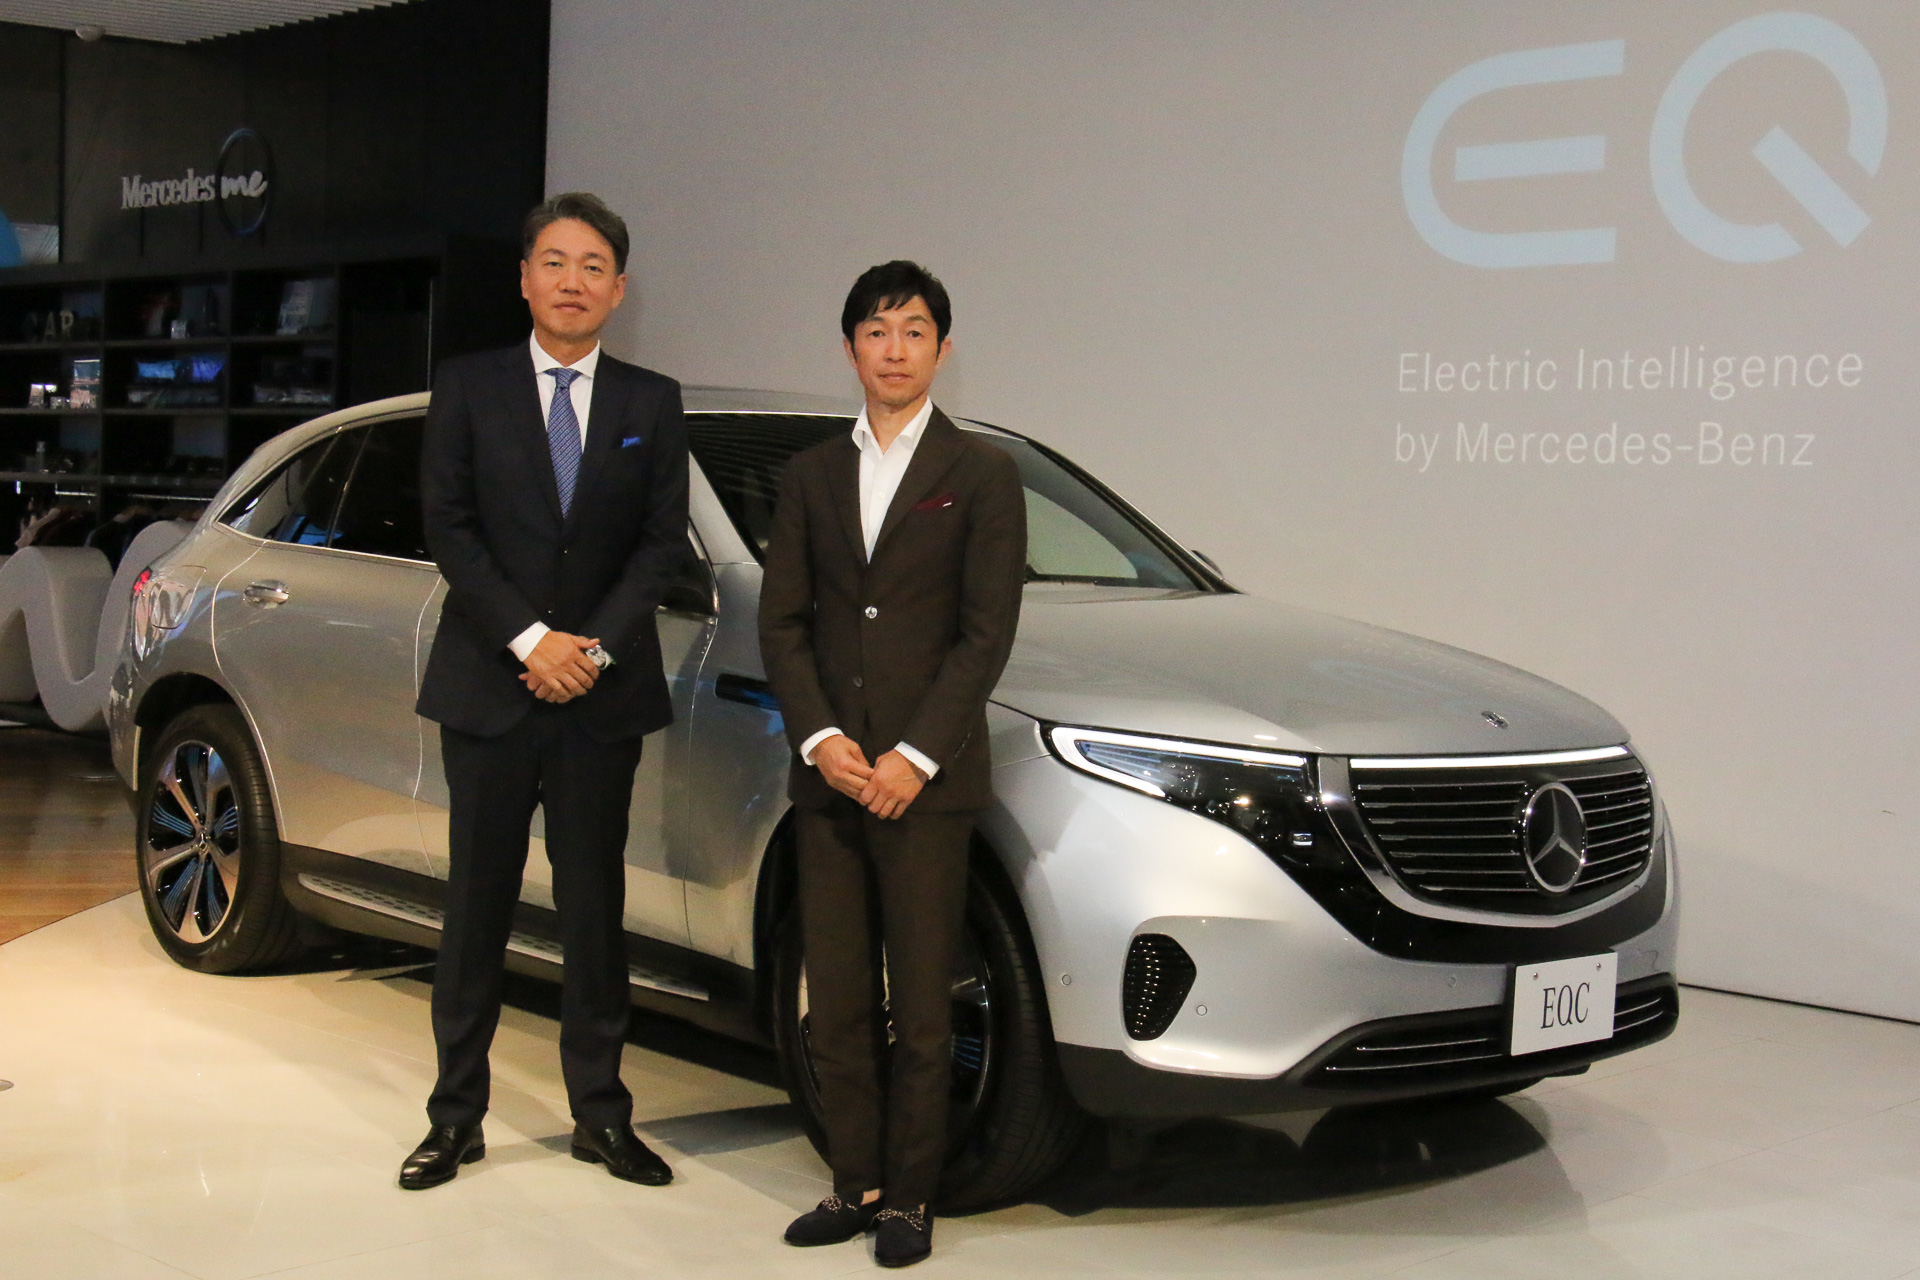 メルセデス・ベンツ、SUVスタイルの新型EV「EQC」発表会 - Car Watch